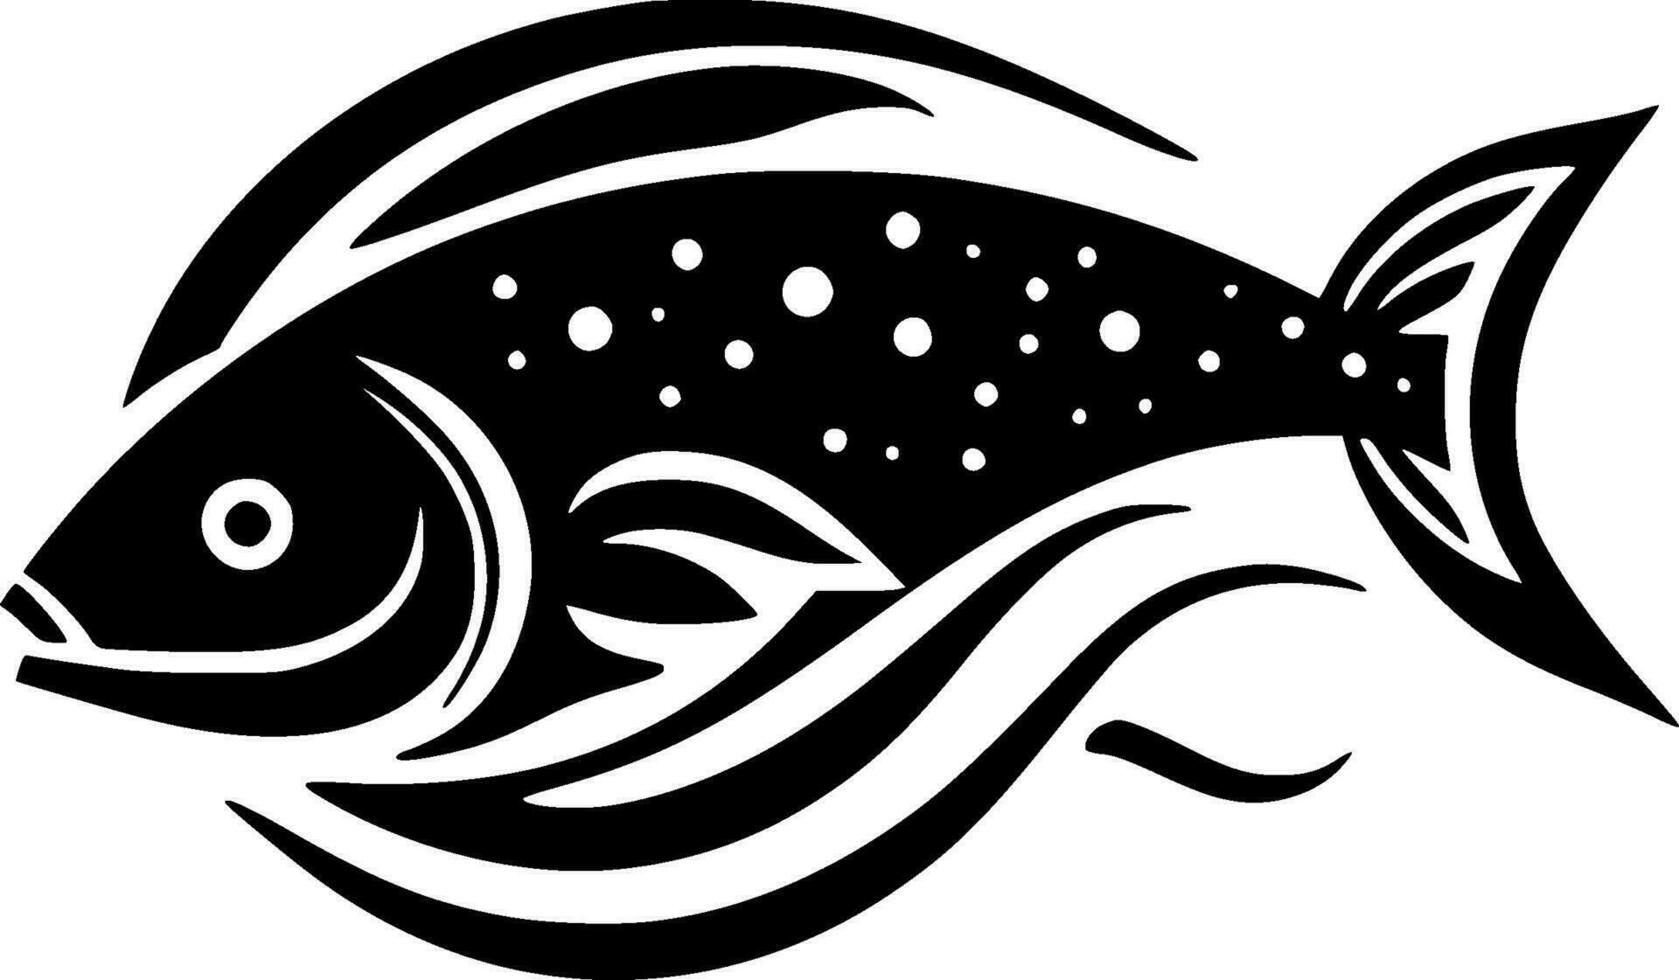 Fisch - - hoch Qualität Vektor Logo - - Vektor Illustration Ideal zum T-Shirt Grafik